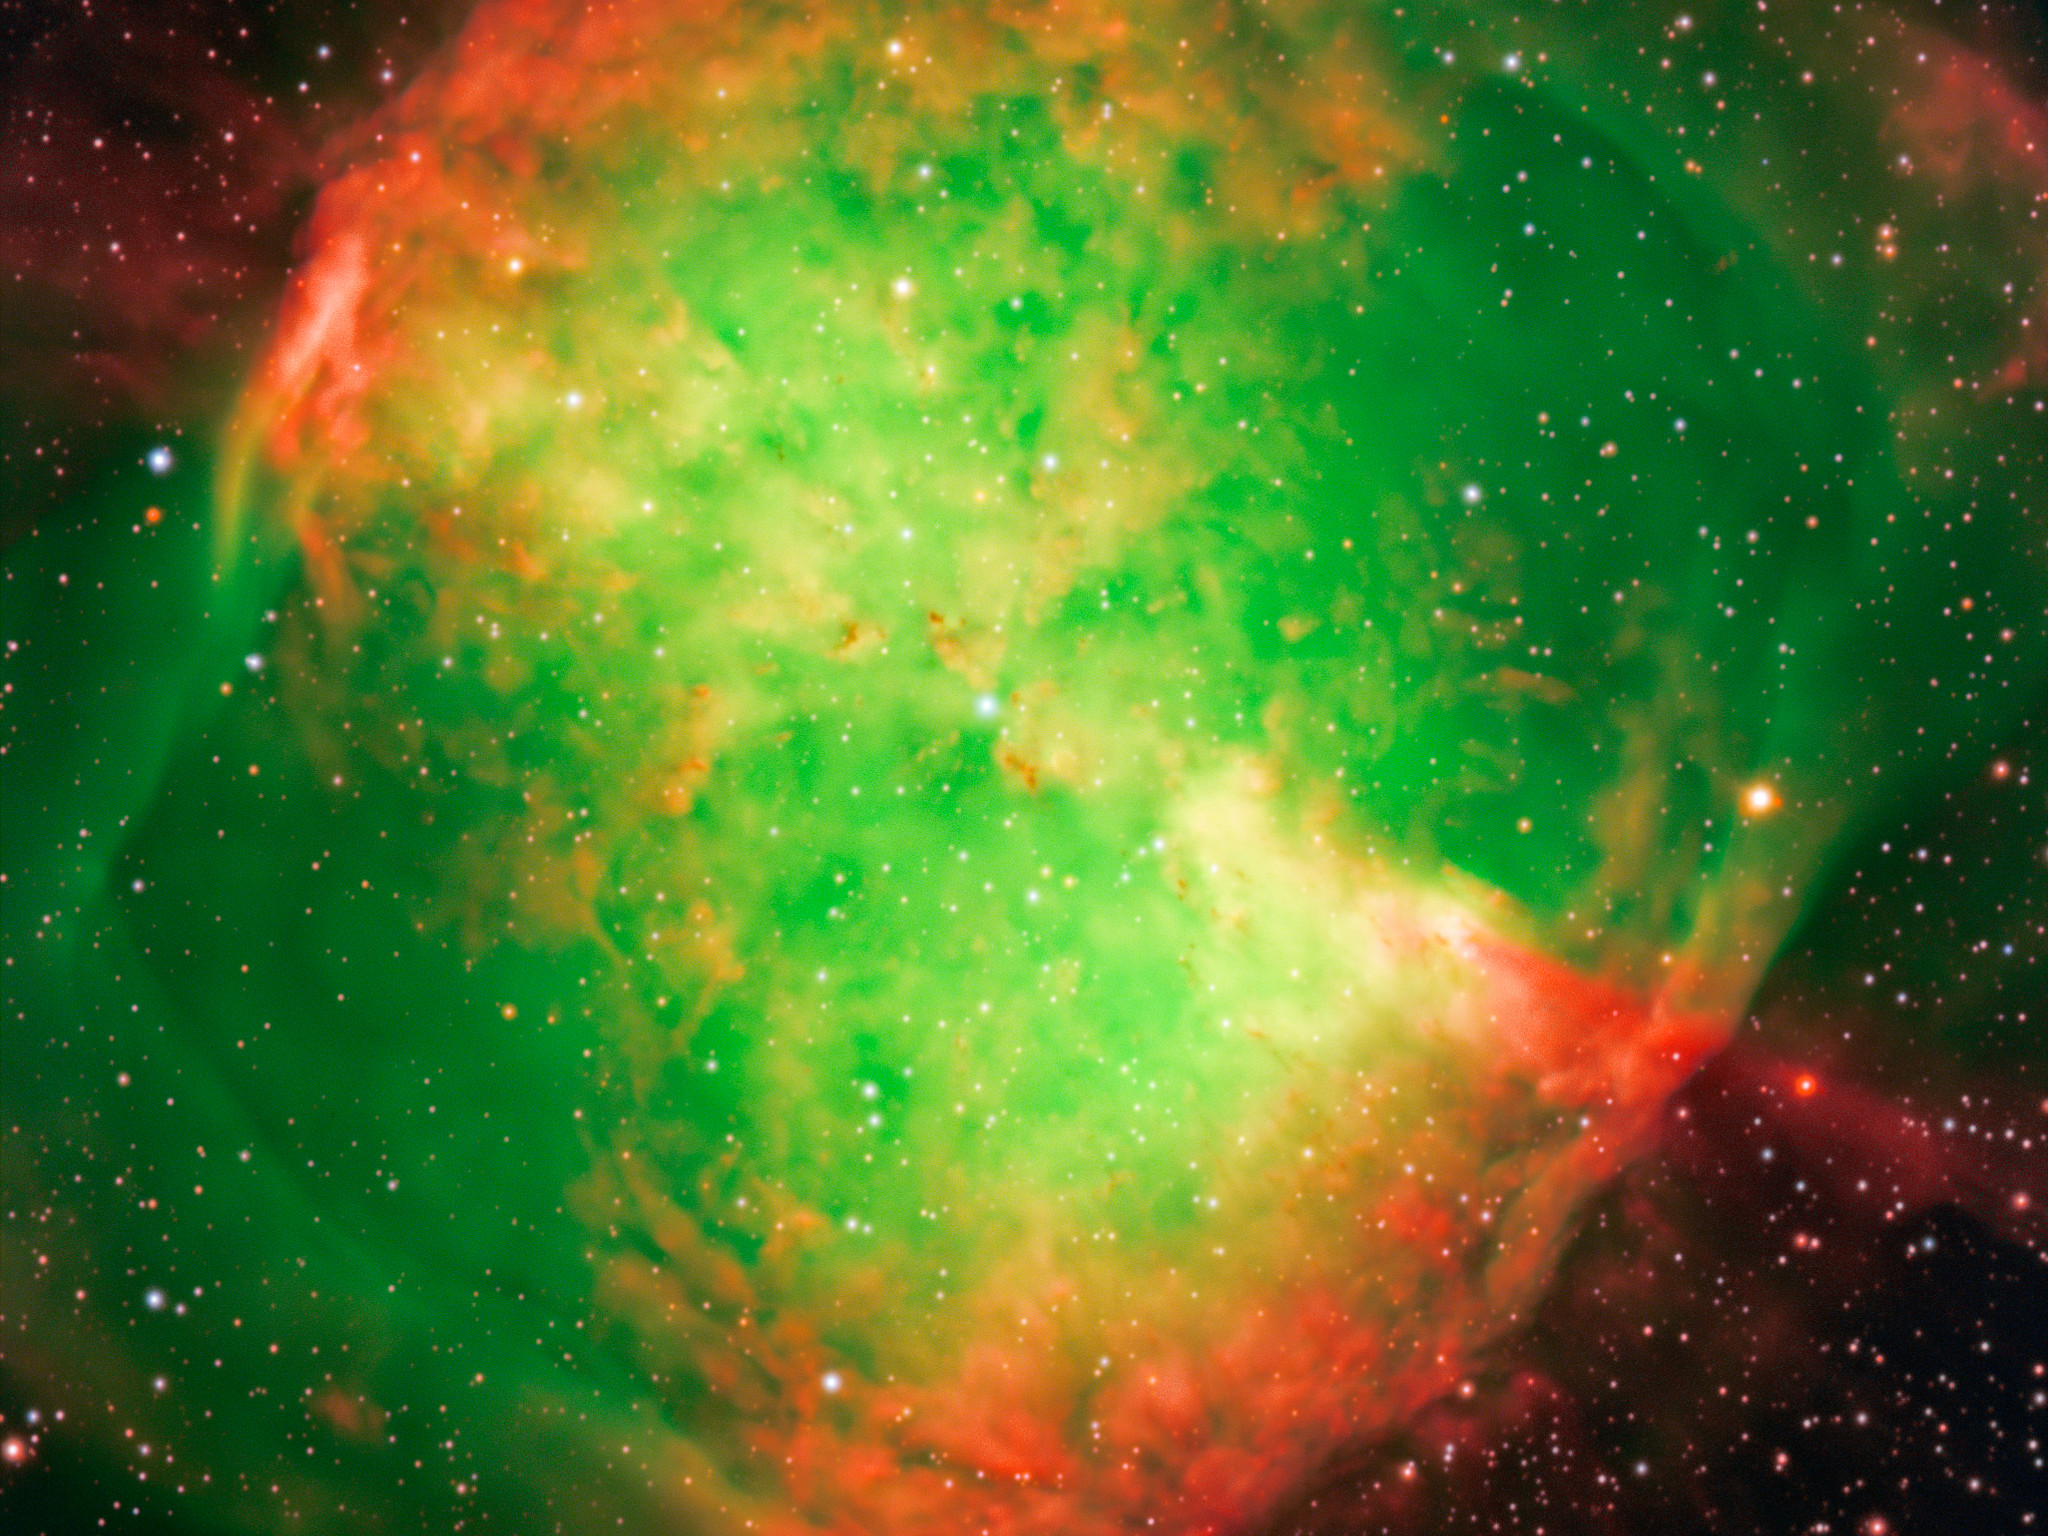 The Dumbbell Nebula